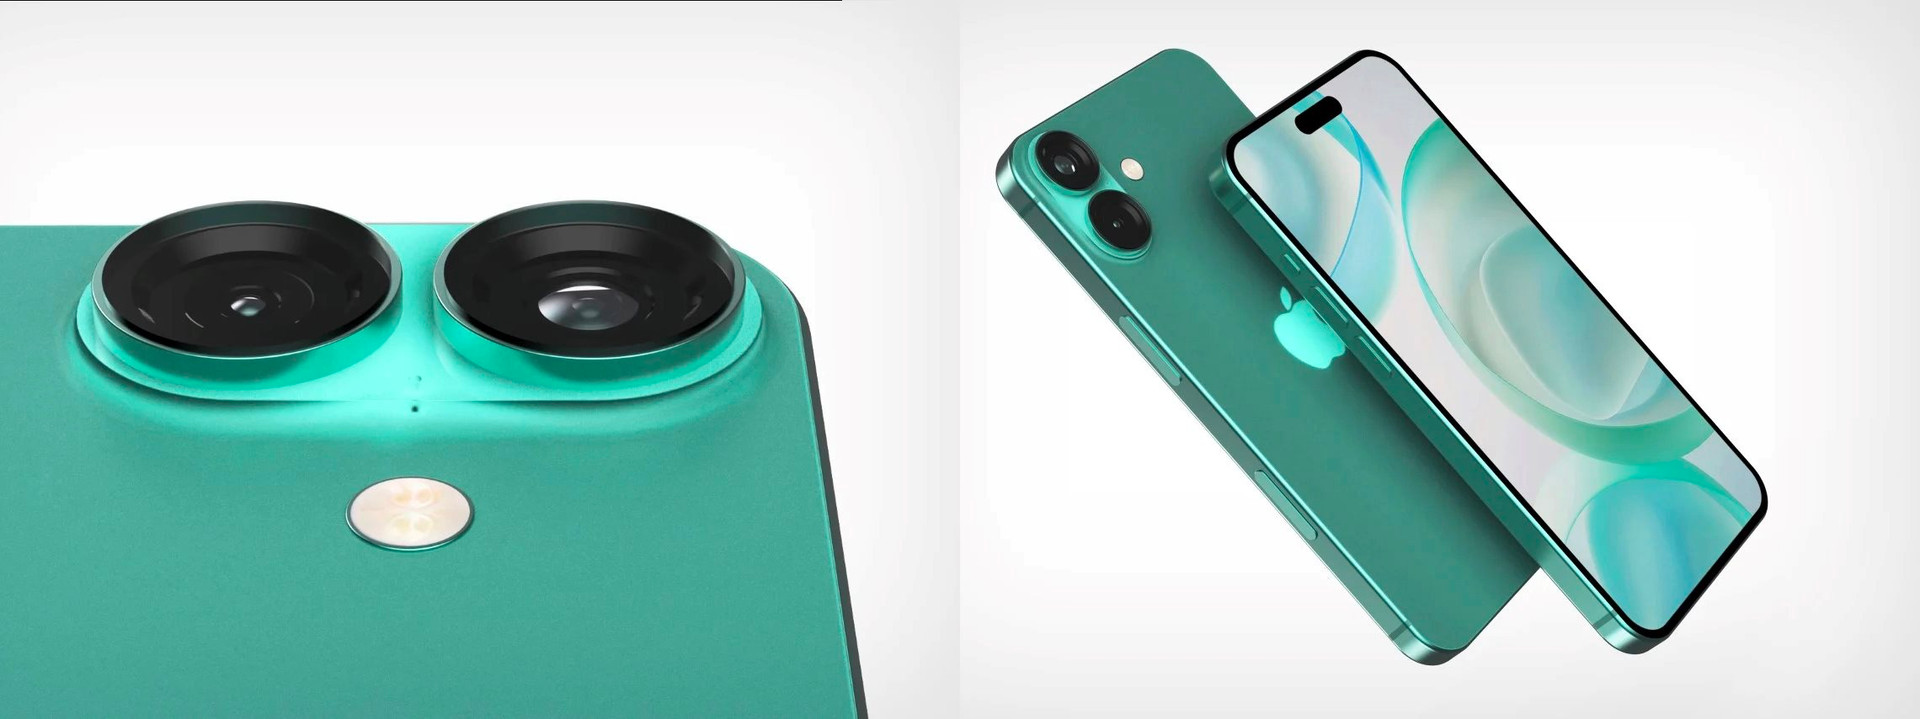 Ngắm iPhone 16 màu xanh siêu sang, thiết kế hoàn toàn mới nhưng đẹp mãn nhãn! - ảnh 2